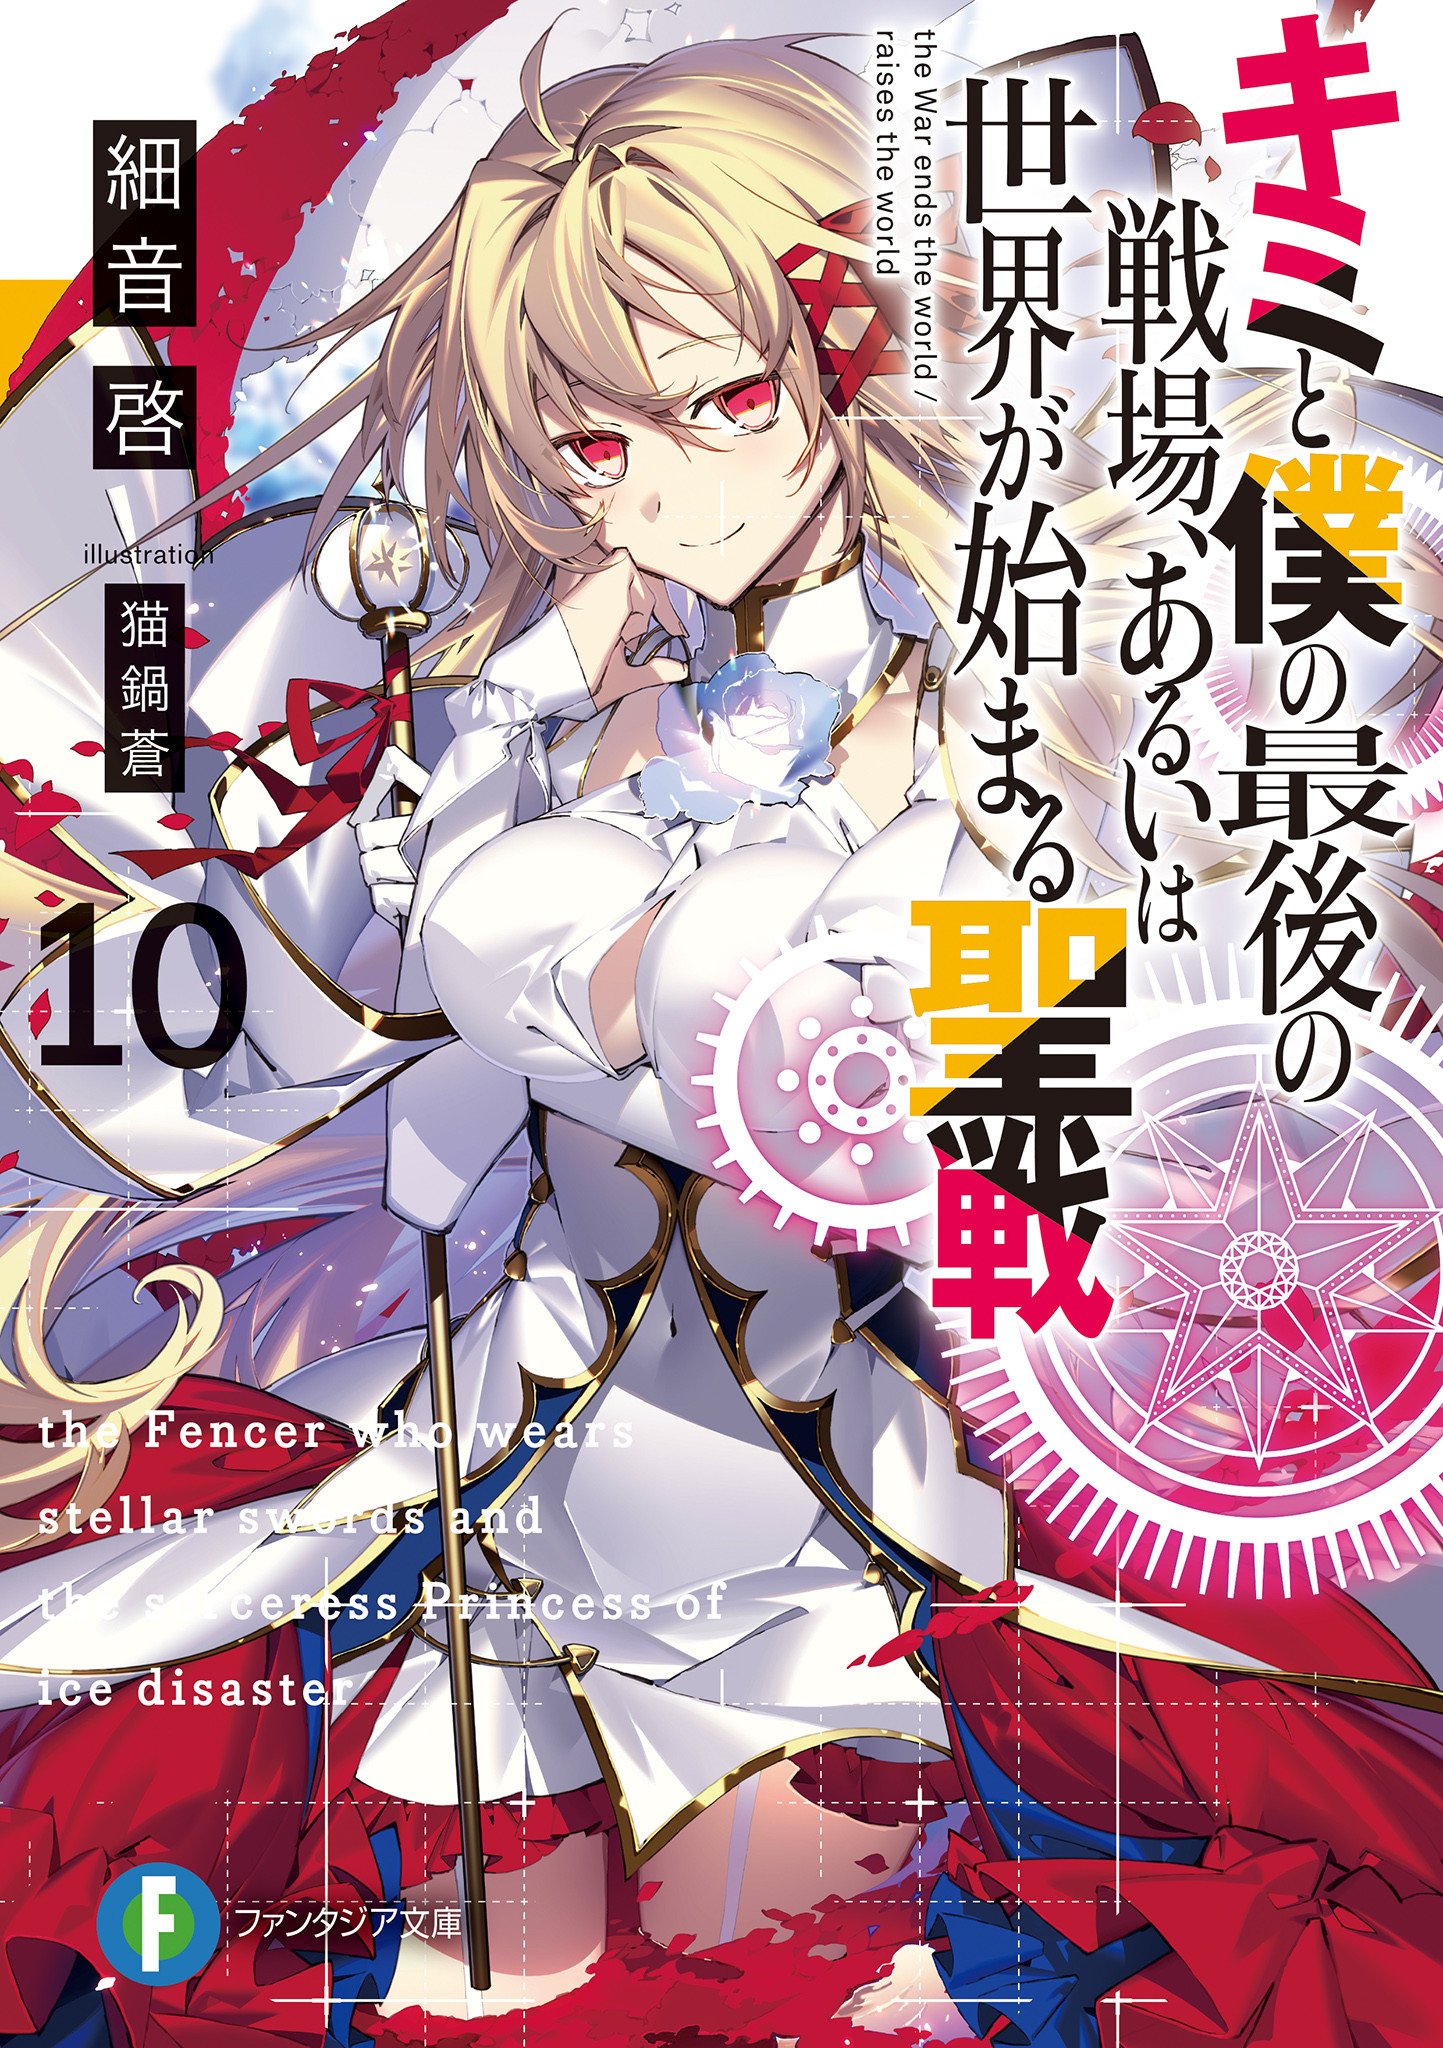 Light Novel Volume 10, KimiSen Wiki